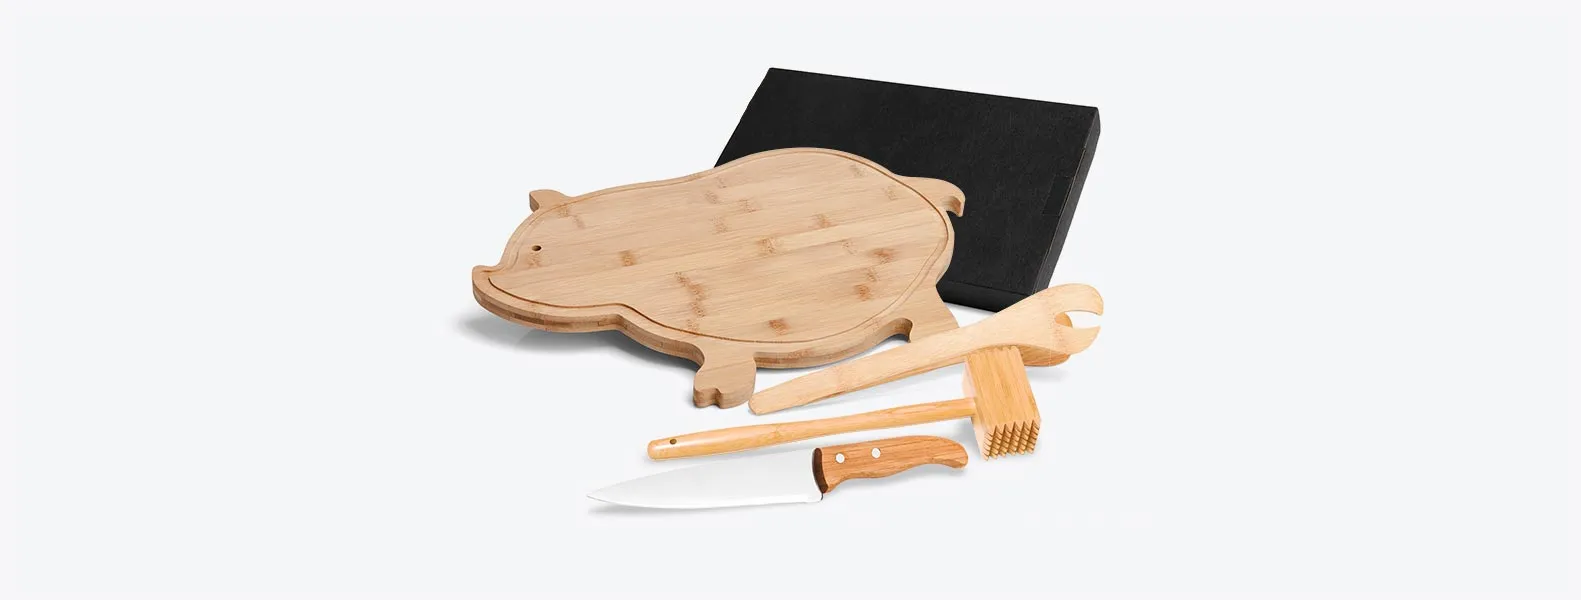 Kit para Cozinha em Bambu/Aço Inox; Conta com tábua em formato de porco, pegador 22cm e martelo em Bambu; Faca 7'' em Bambu/Inox. Tábua confeccionada com tripla camada invertida, para dar maior durabilidade.